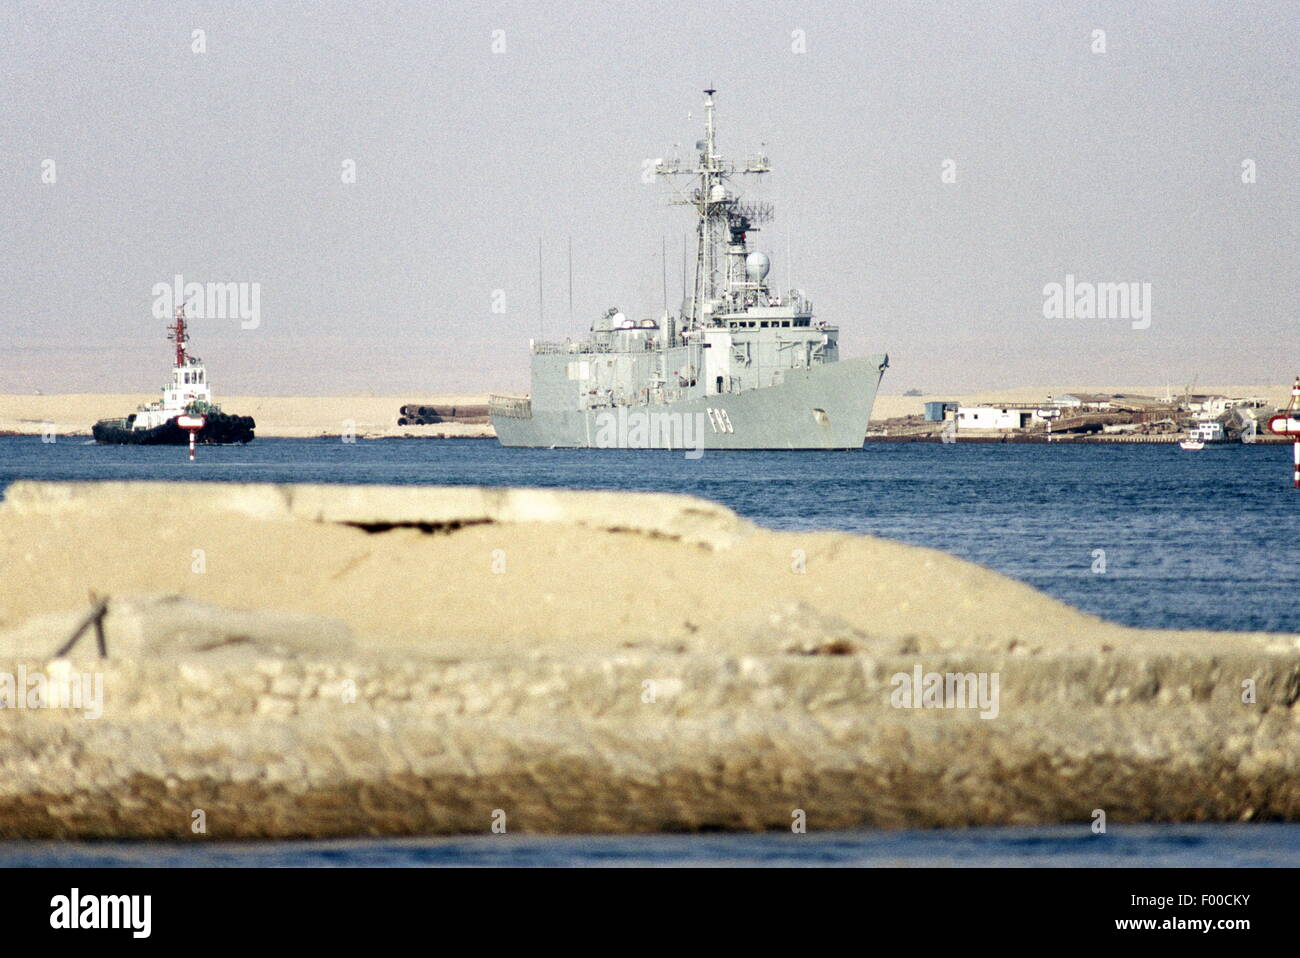 Canal de Suez, Egypte -- 1989 -- un navire de guerre de la marine espagnole en direction de devoir dans le golfe Persique le transit du canal de Suez. Banque D'Images